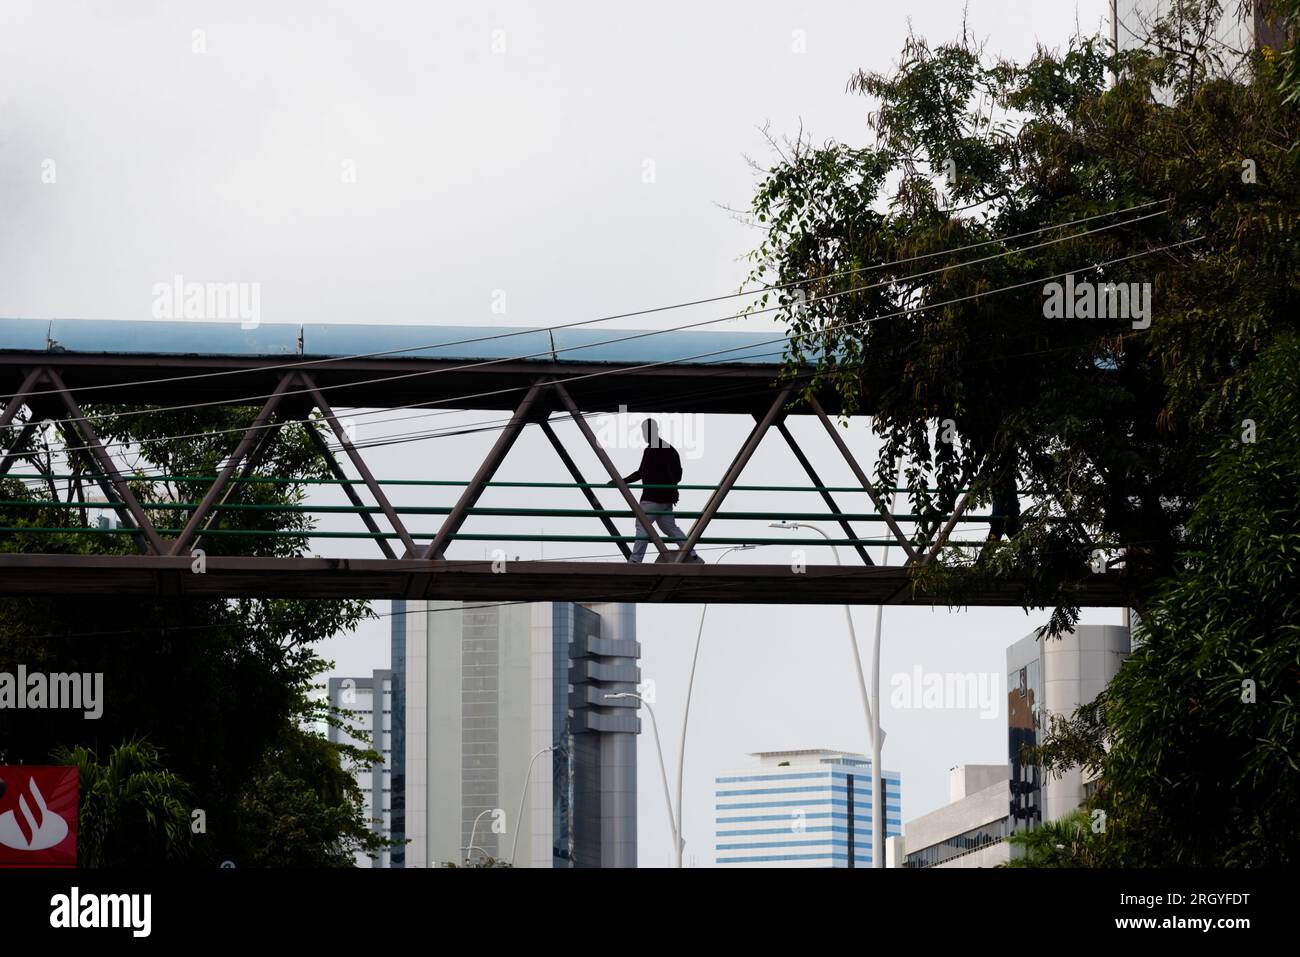 Salvador, Bahia, Brasile - 11 agosto 2023: Si vedono persone che attraversano uno dei ponti pedonali sull'Avenida Tancredo Neves a Salvador, Bahia. Foto Stock